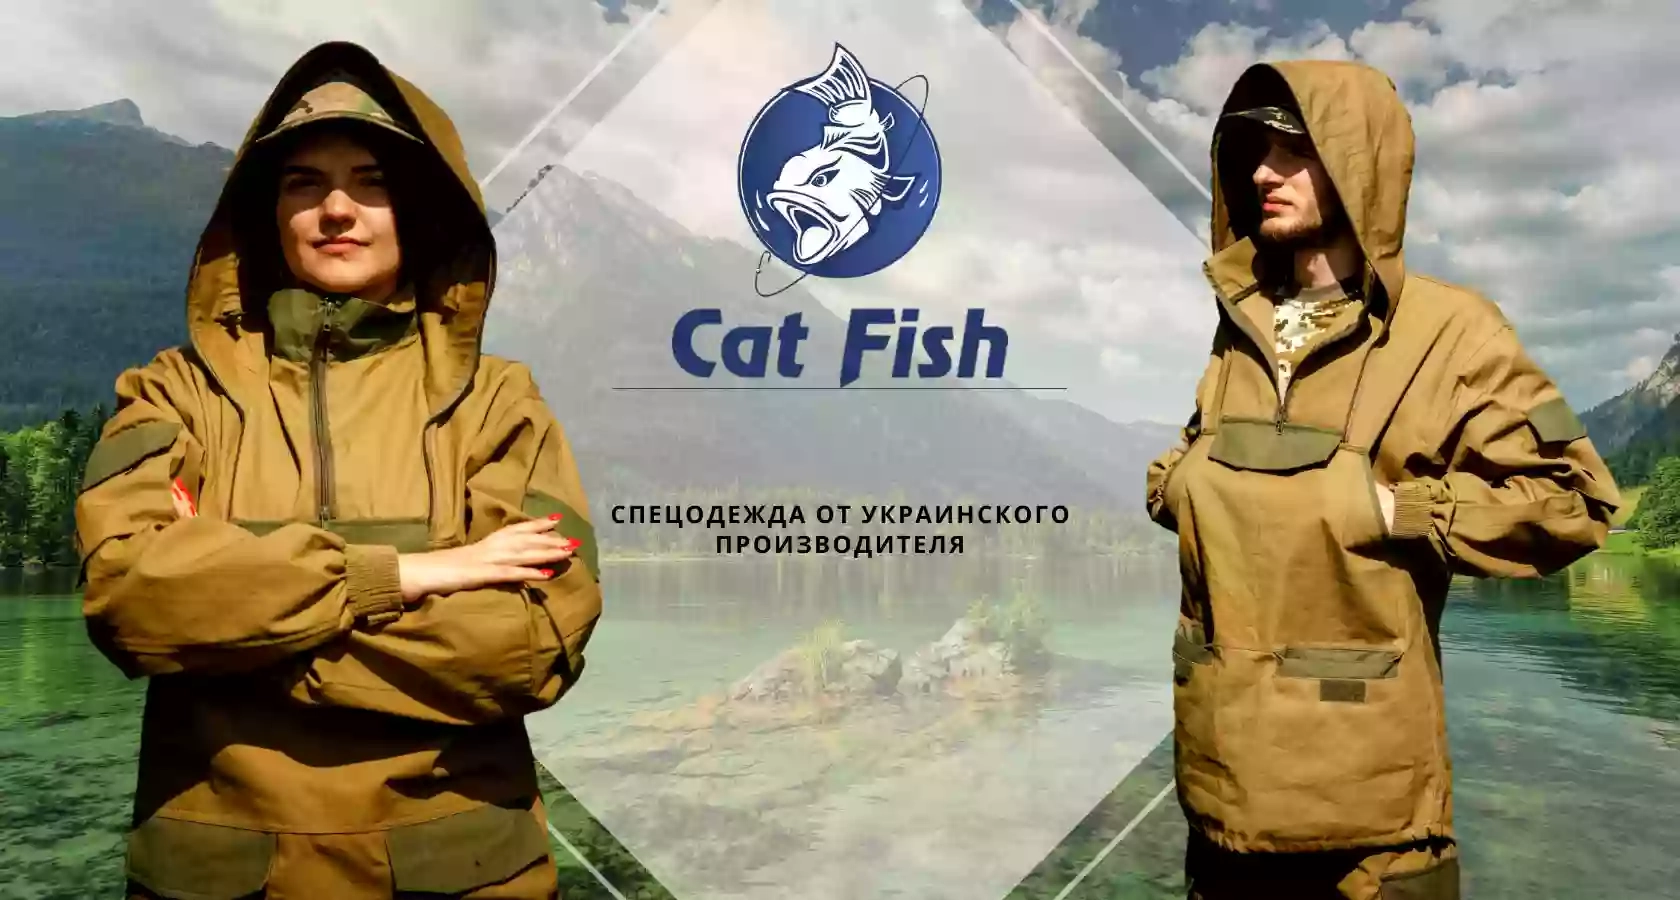 CatFish продажа спецодежды